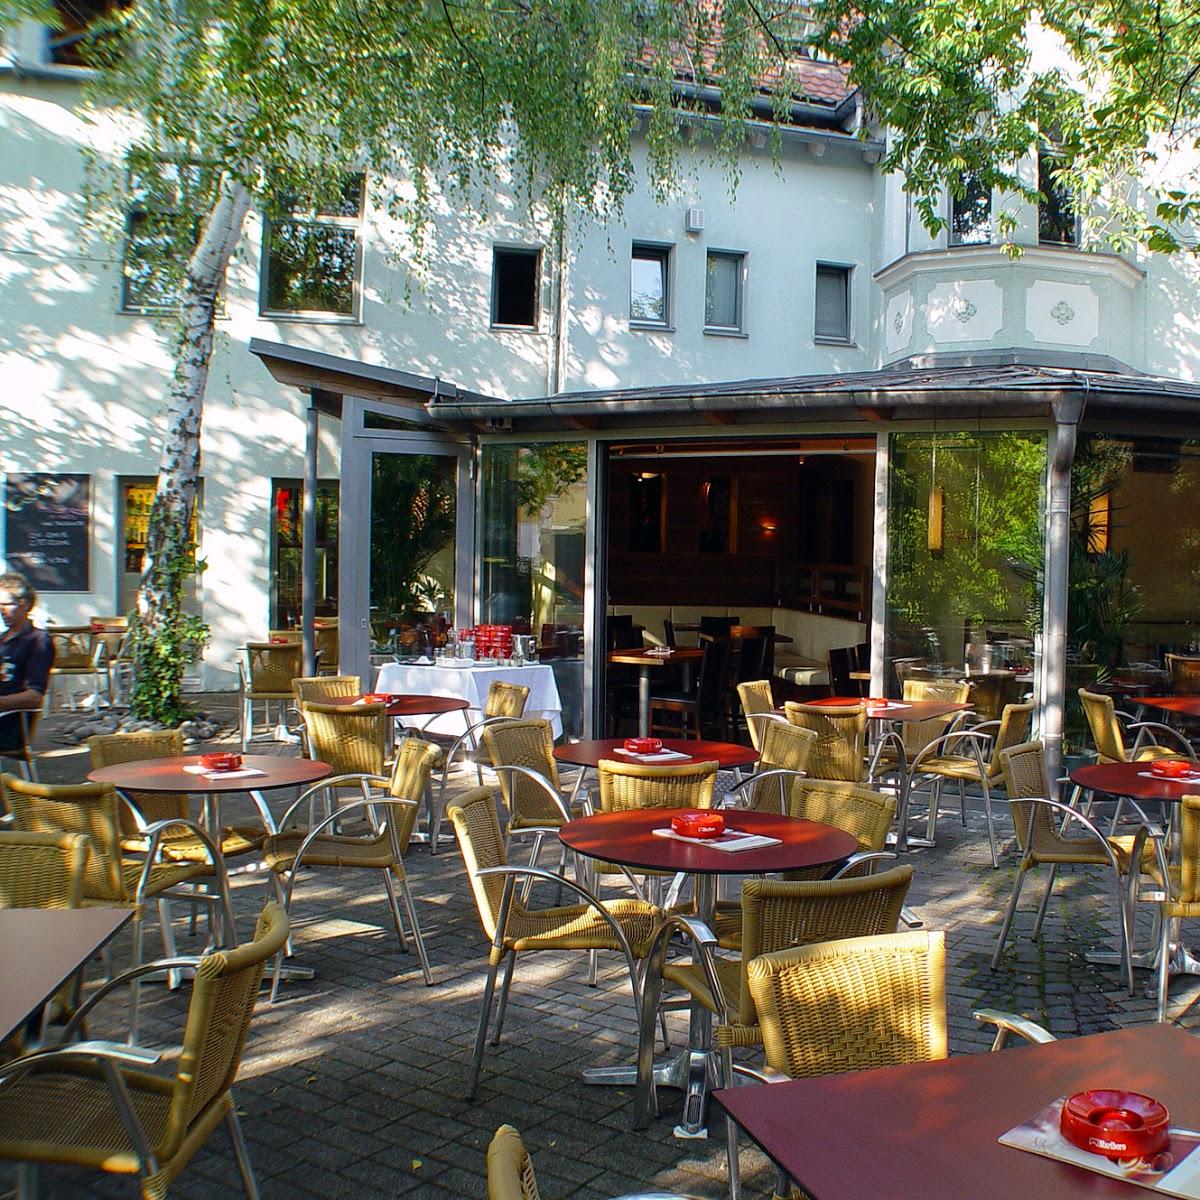 Restaurant "Bistro Sinnopoli" in Bayreuth